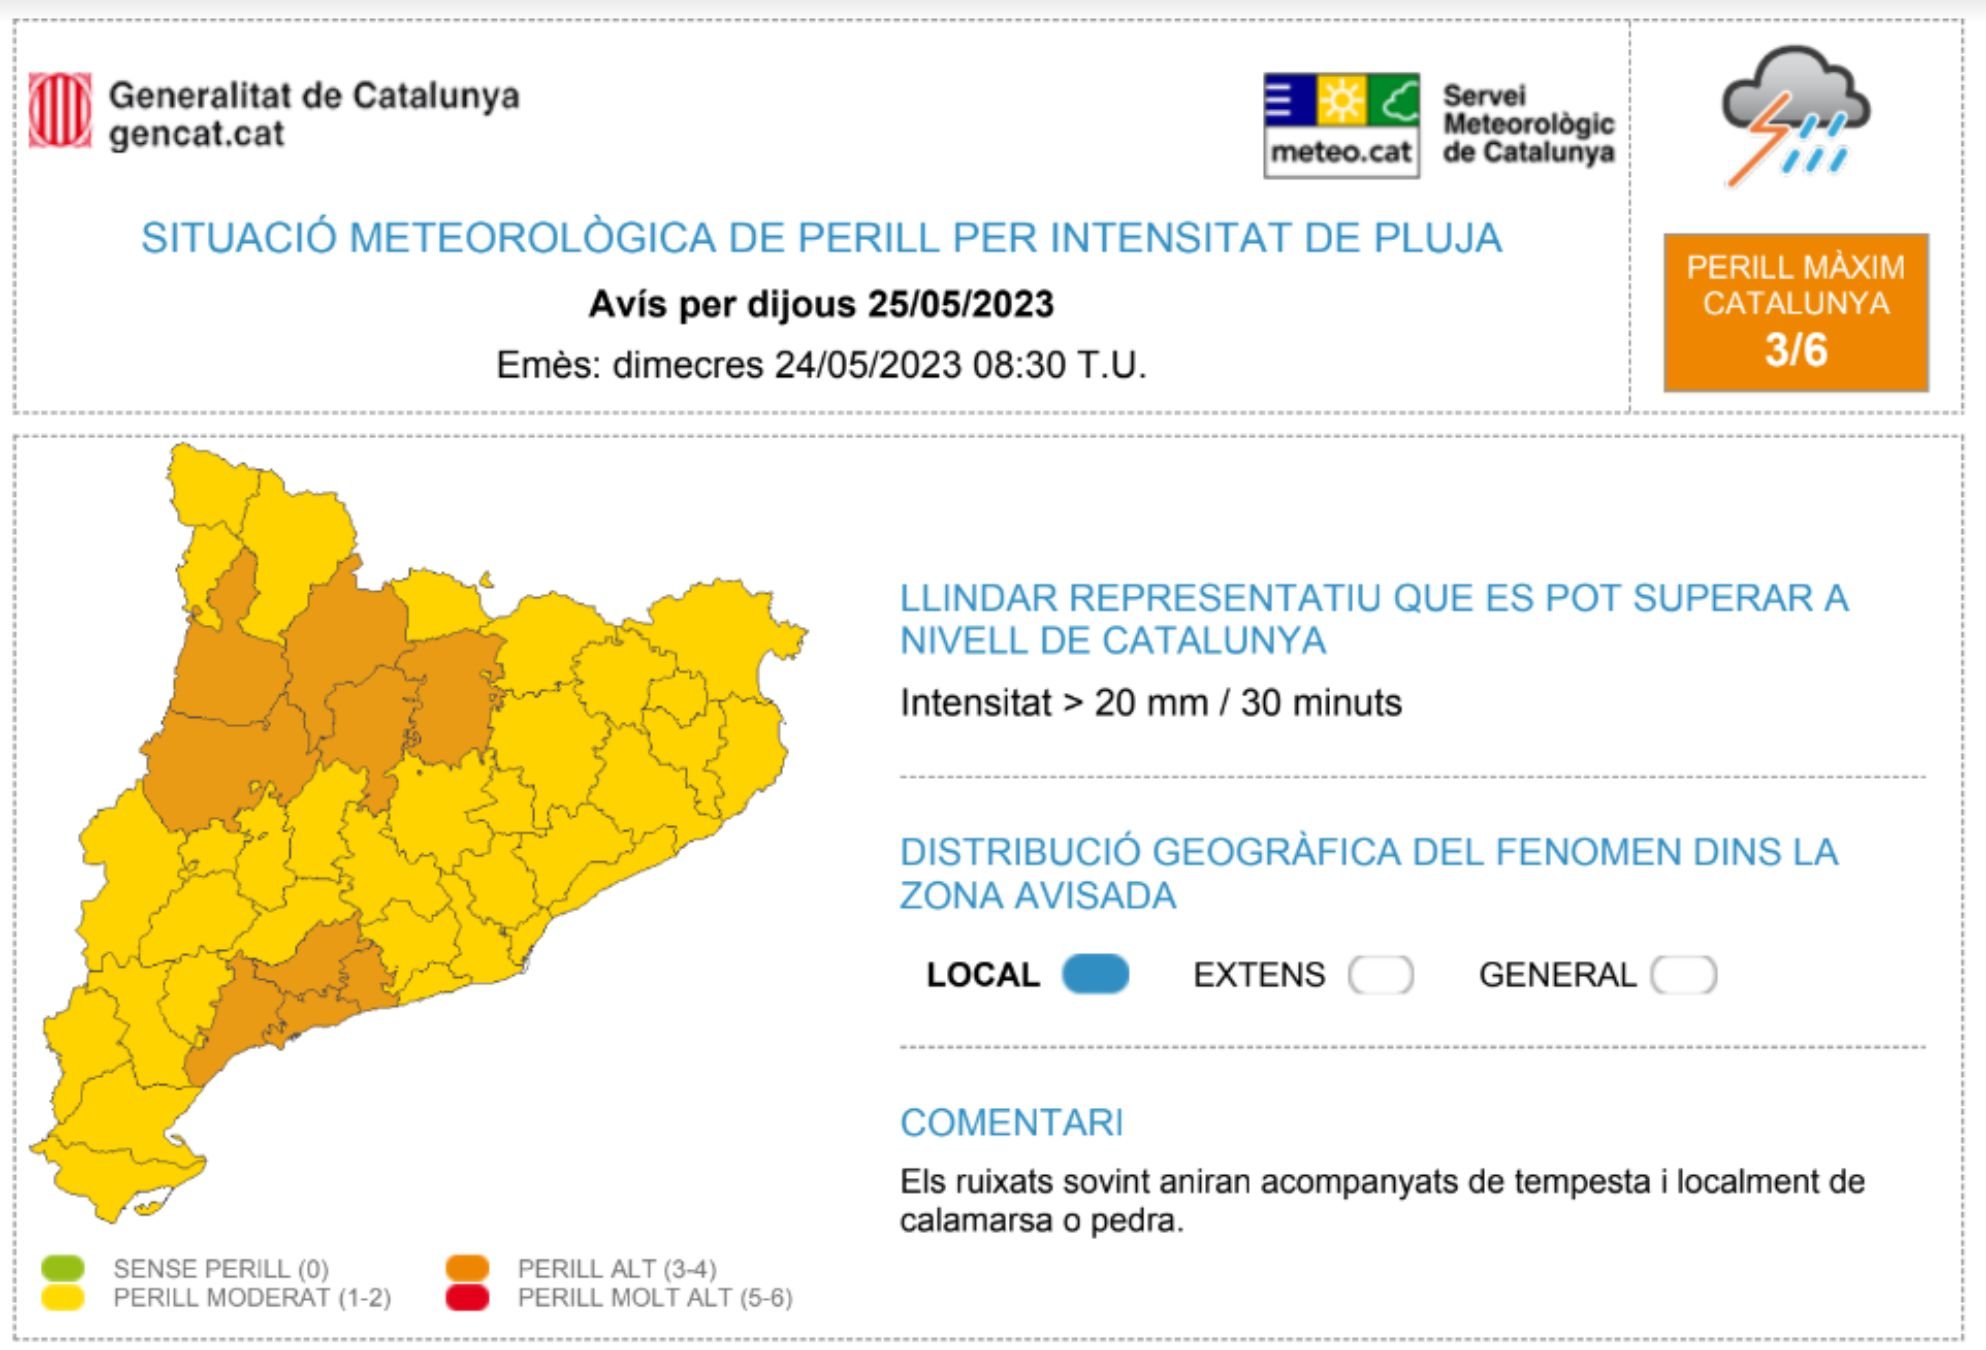 El jueves, la lluvia será muy intensa en toda Cataluña / Servei Meteorològic de Cataluña